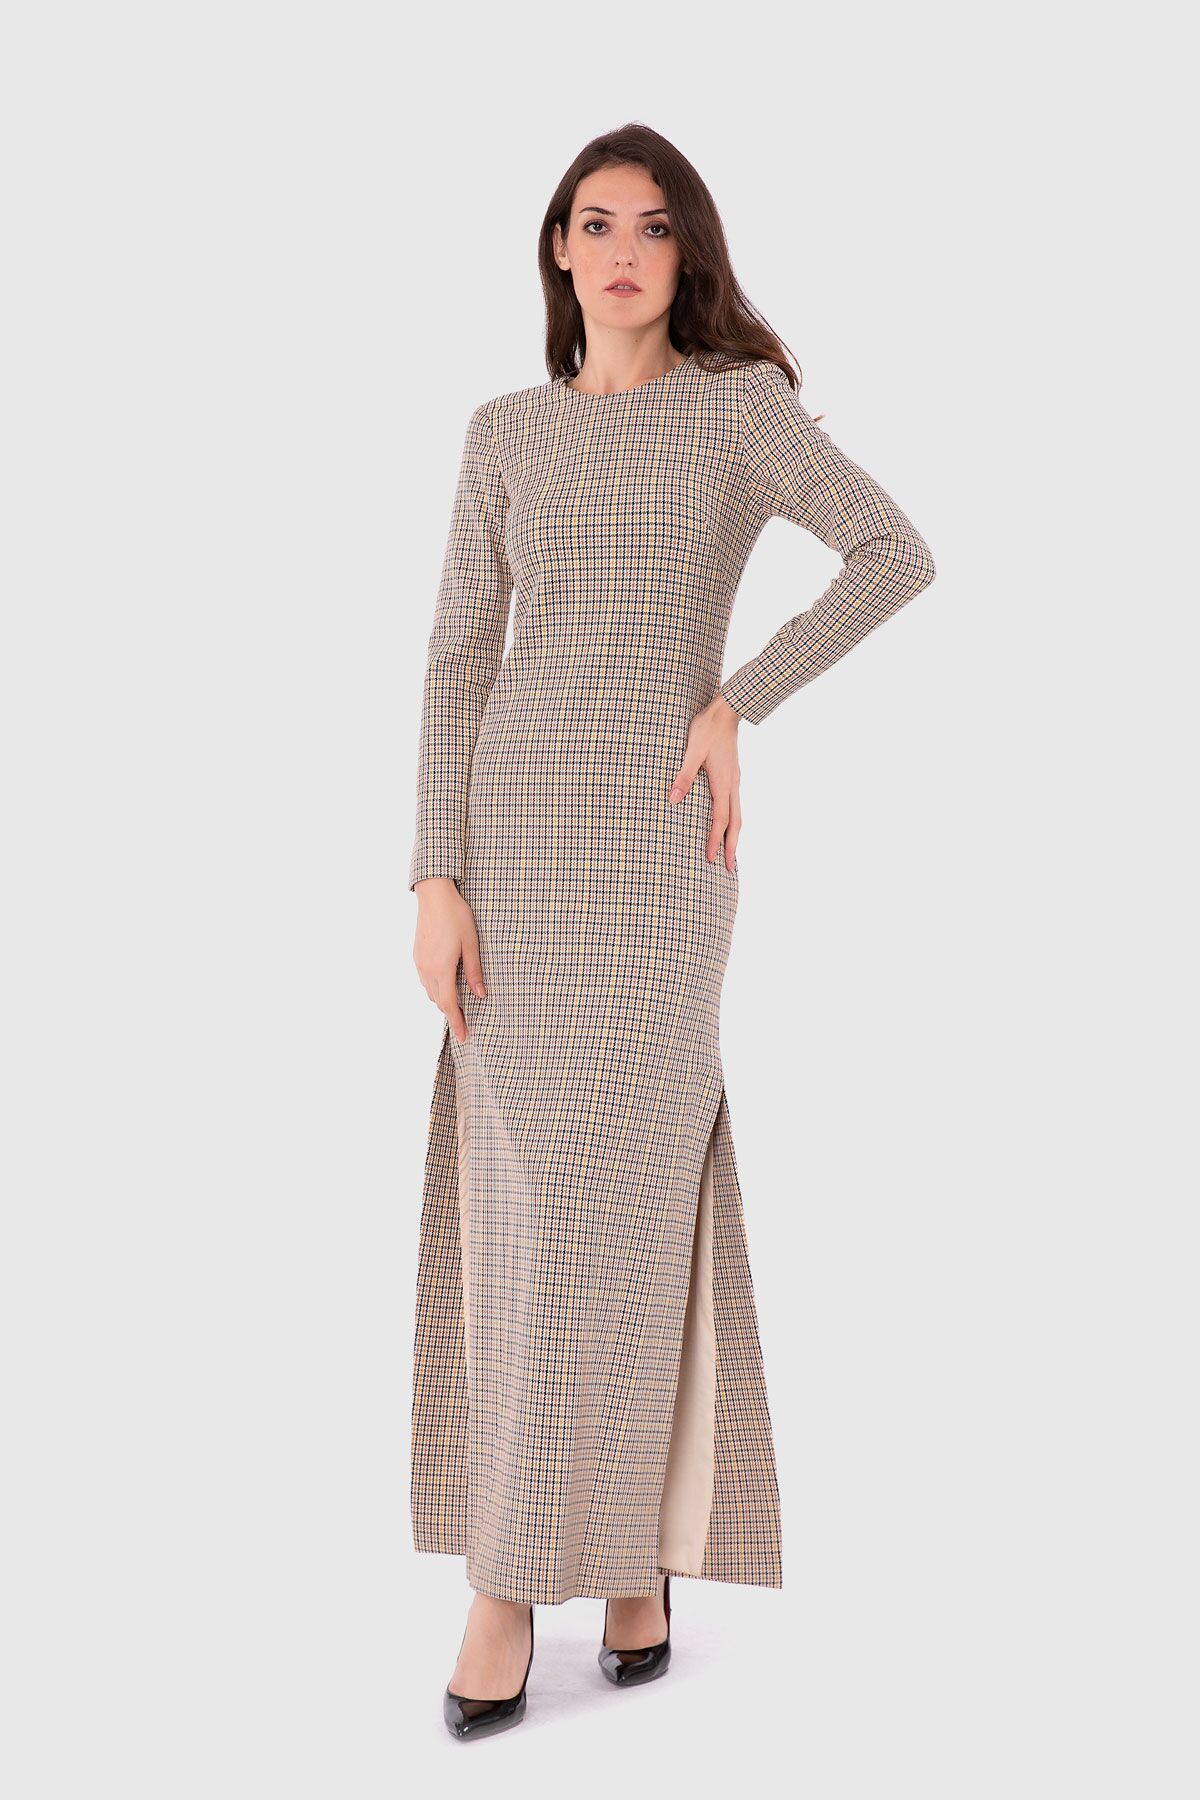  GIZIA - Uzun Kol Yuvarlak Yaka Yırtmaç Detaylı Elbise